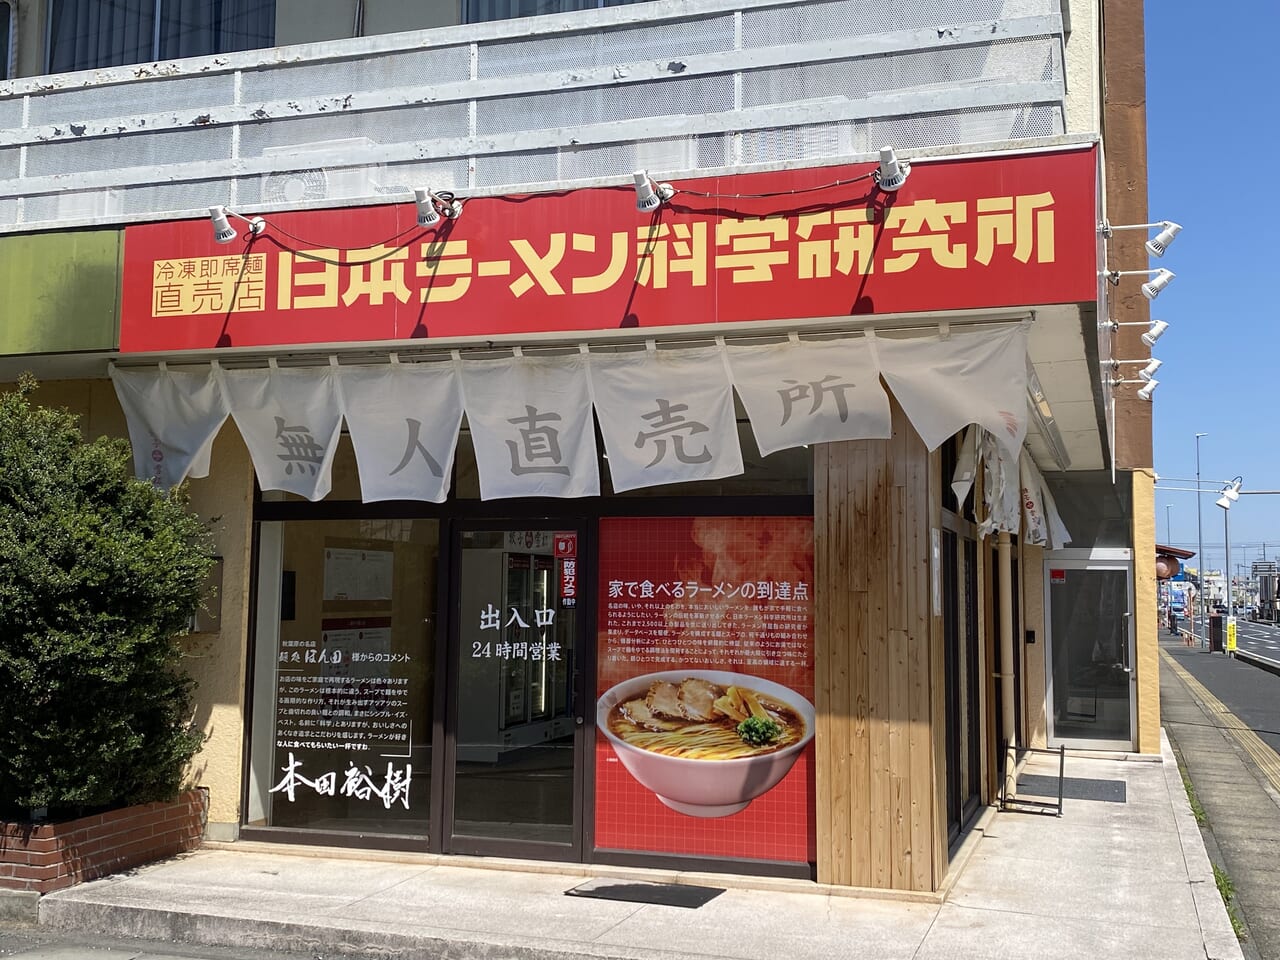 日本ラーメン科学研究所の店舗入口